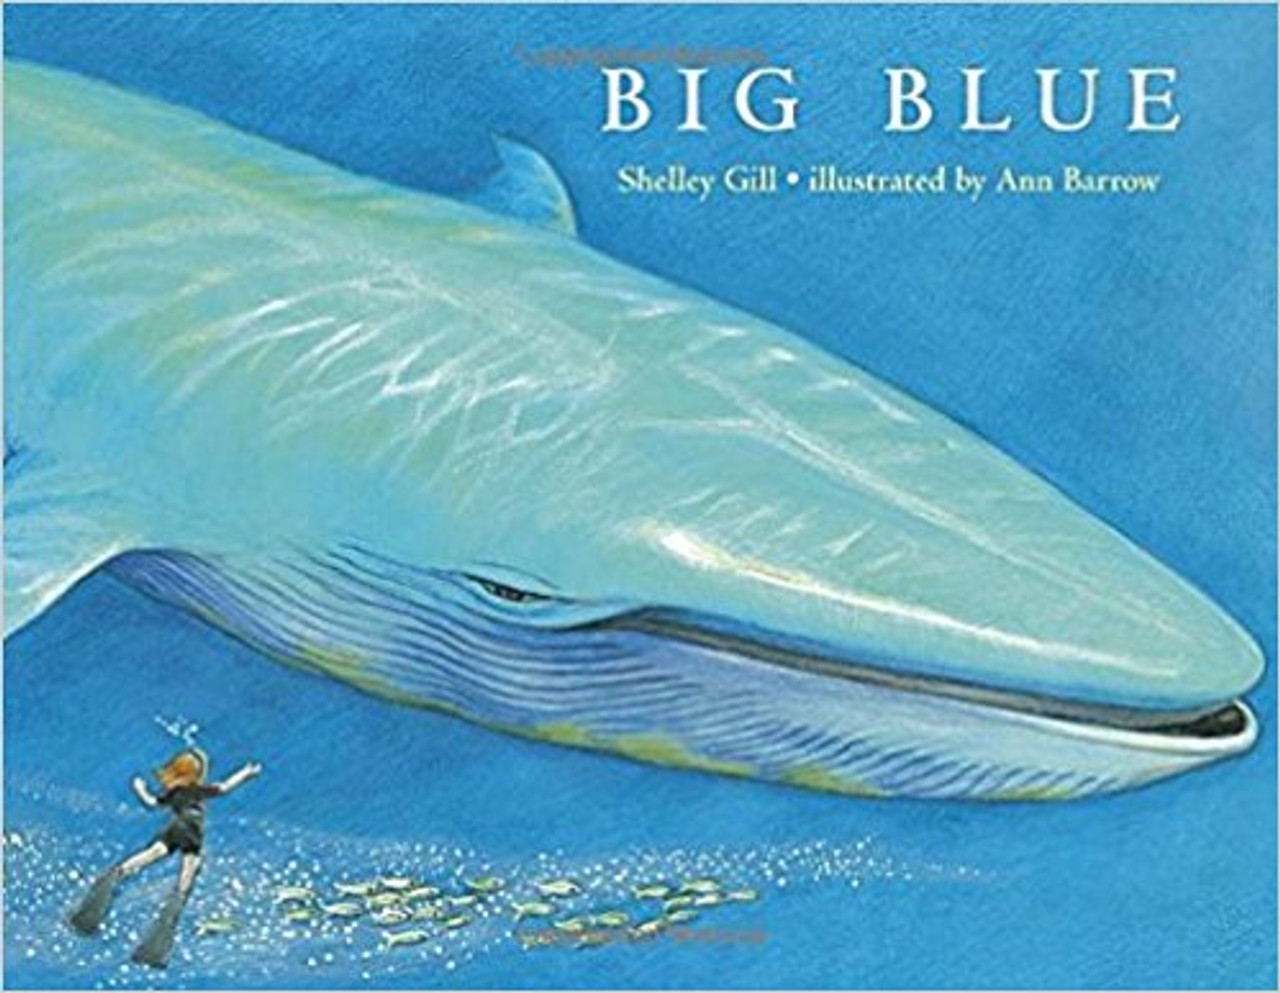 Big Blue by Shelley Gill